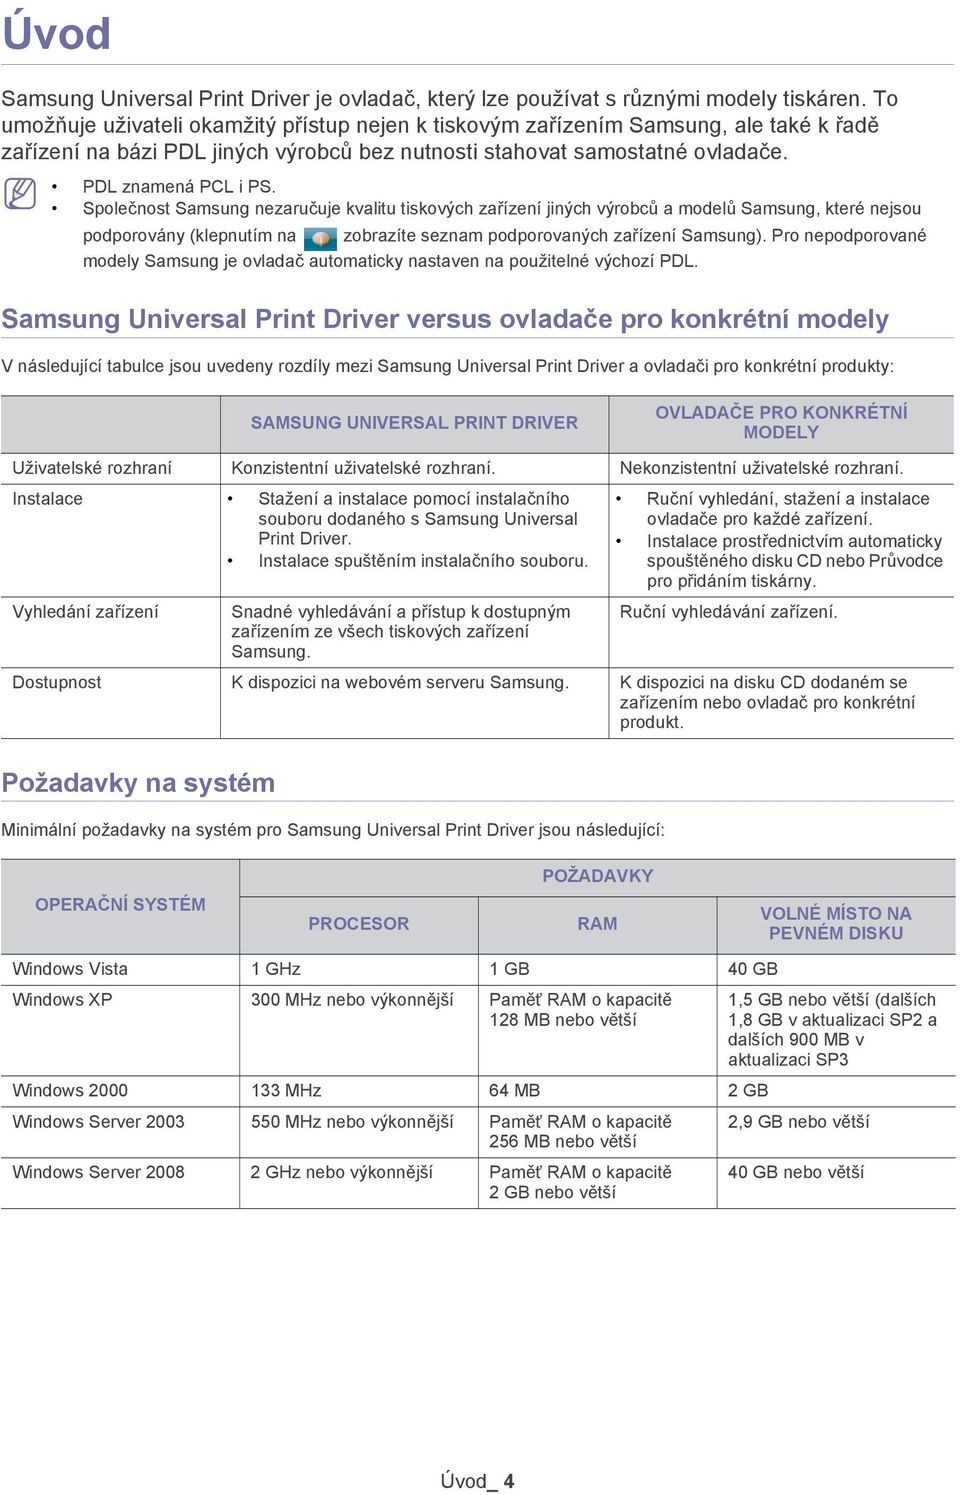 Společnost Samsung nezaručuje kvalitu tiskových zařízení jiných výrobců a modelů Samsung, které nejsou podporovány (klepnutím na zobrazíte seznam podporovaných zařízení Samsung).